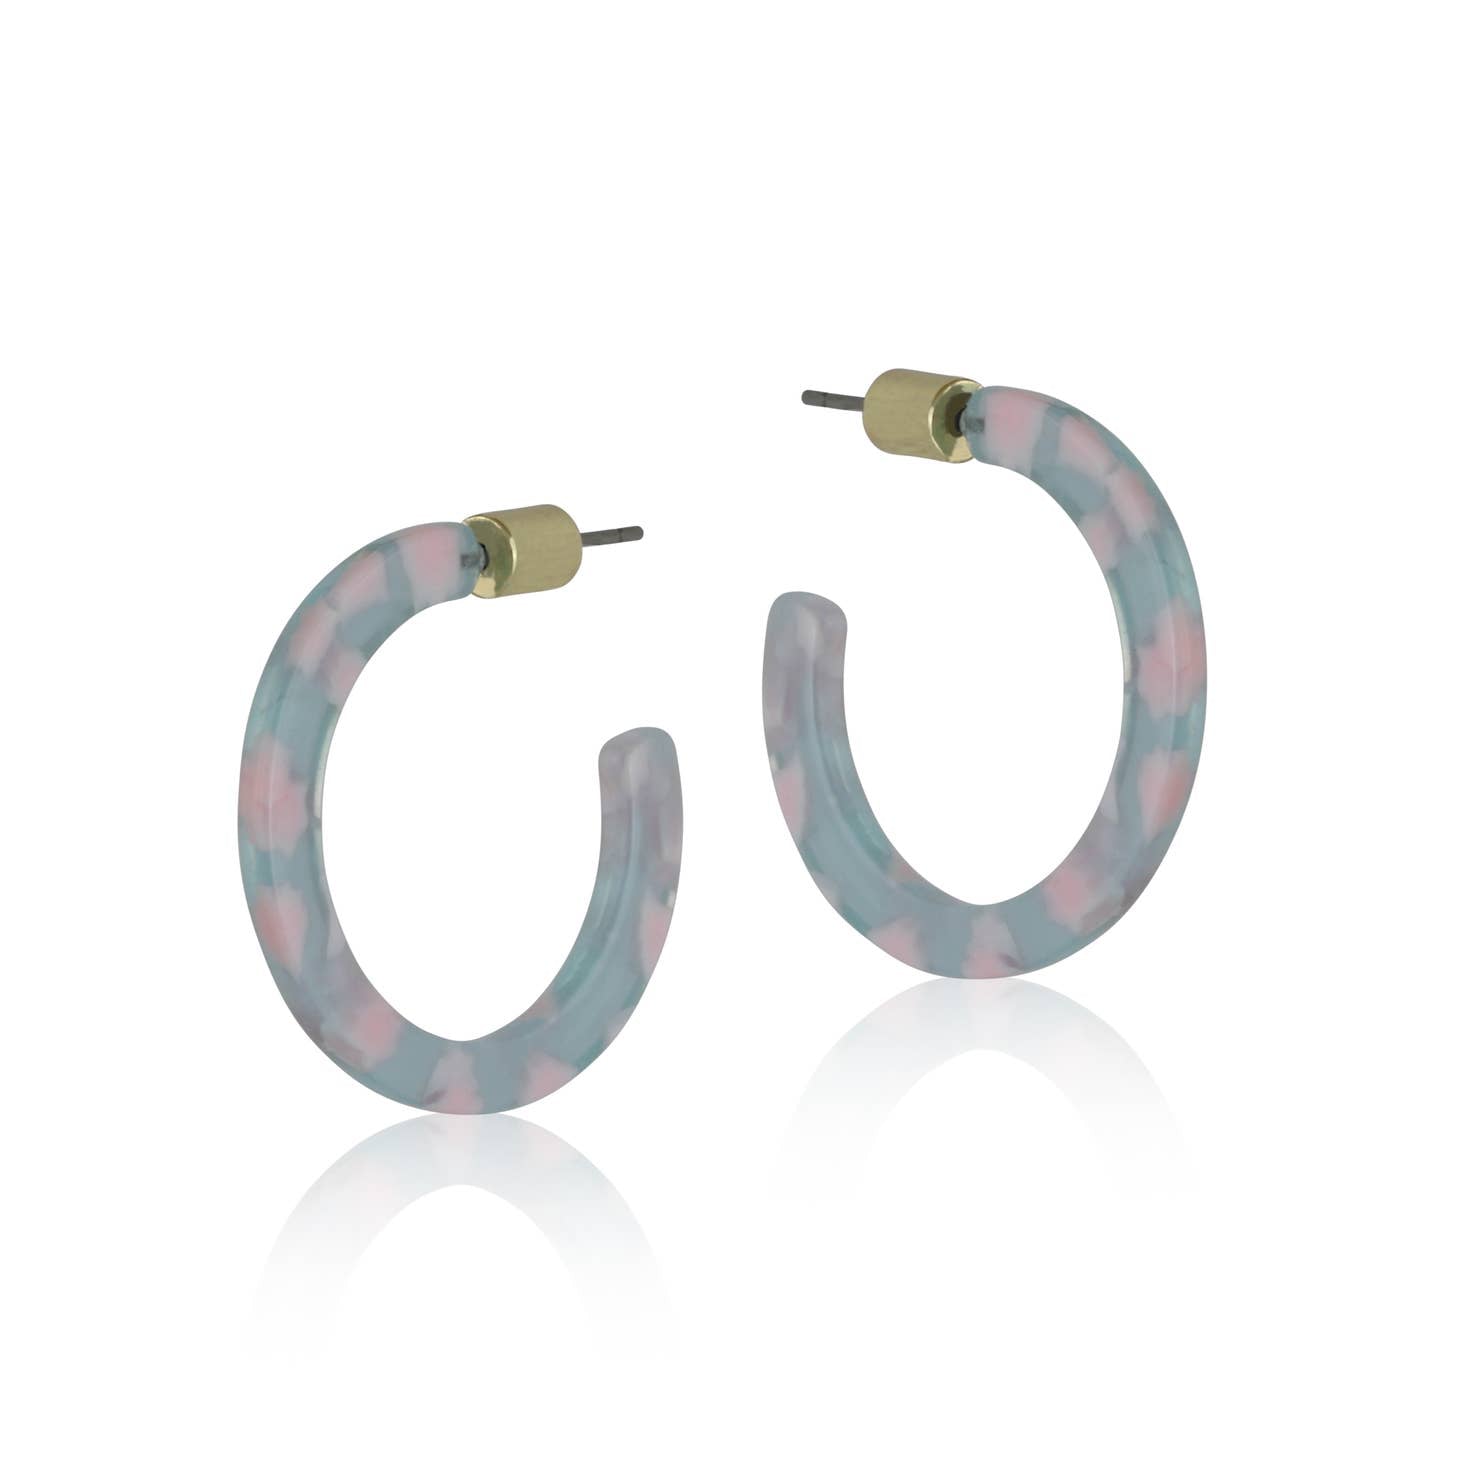 Small resin hoop earrings